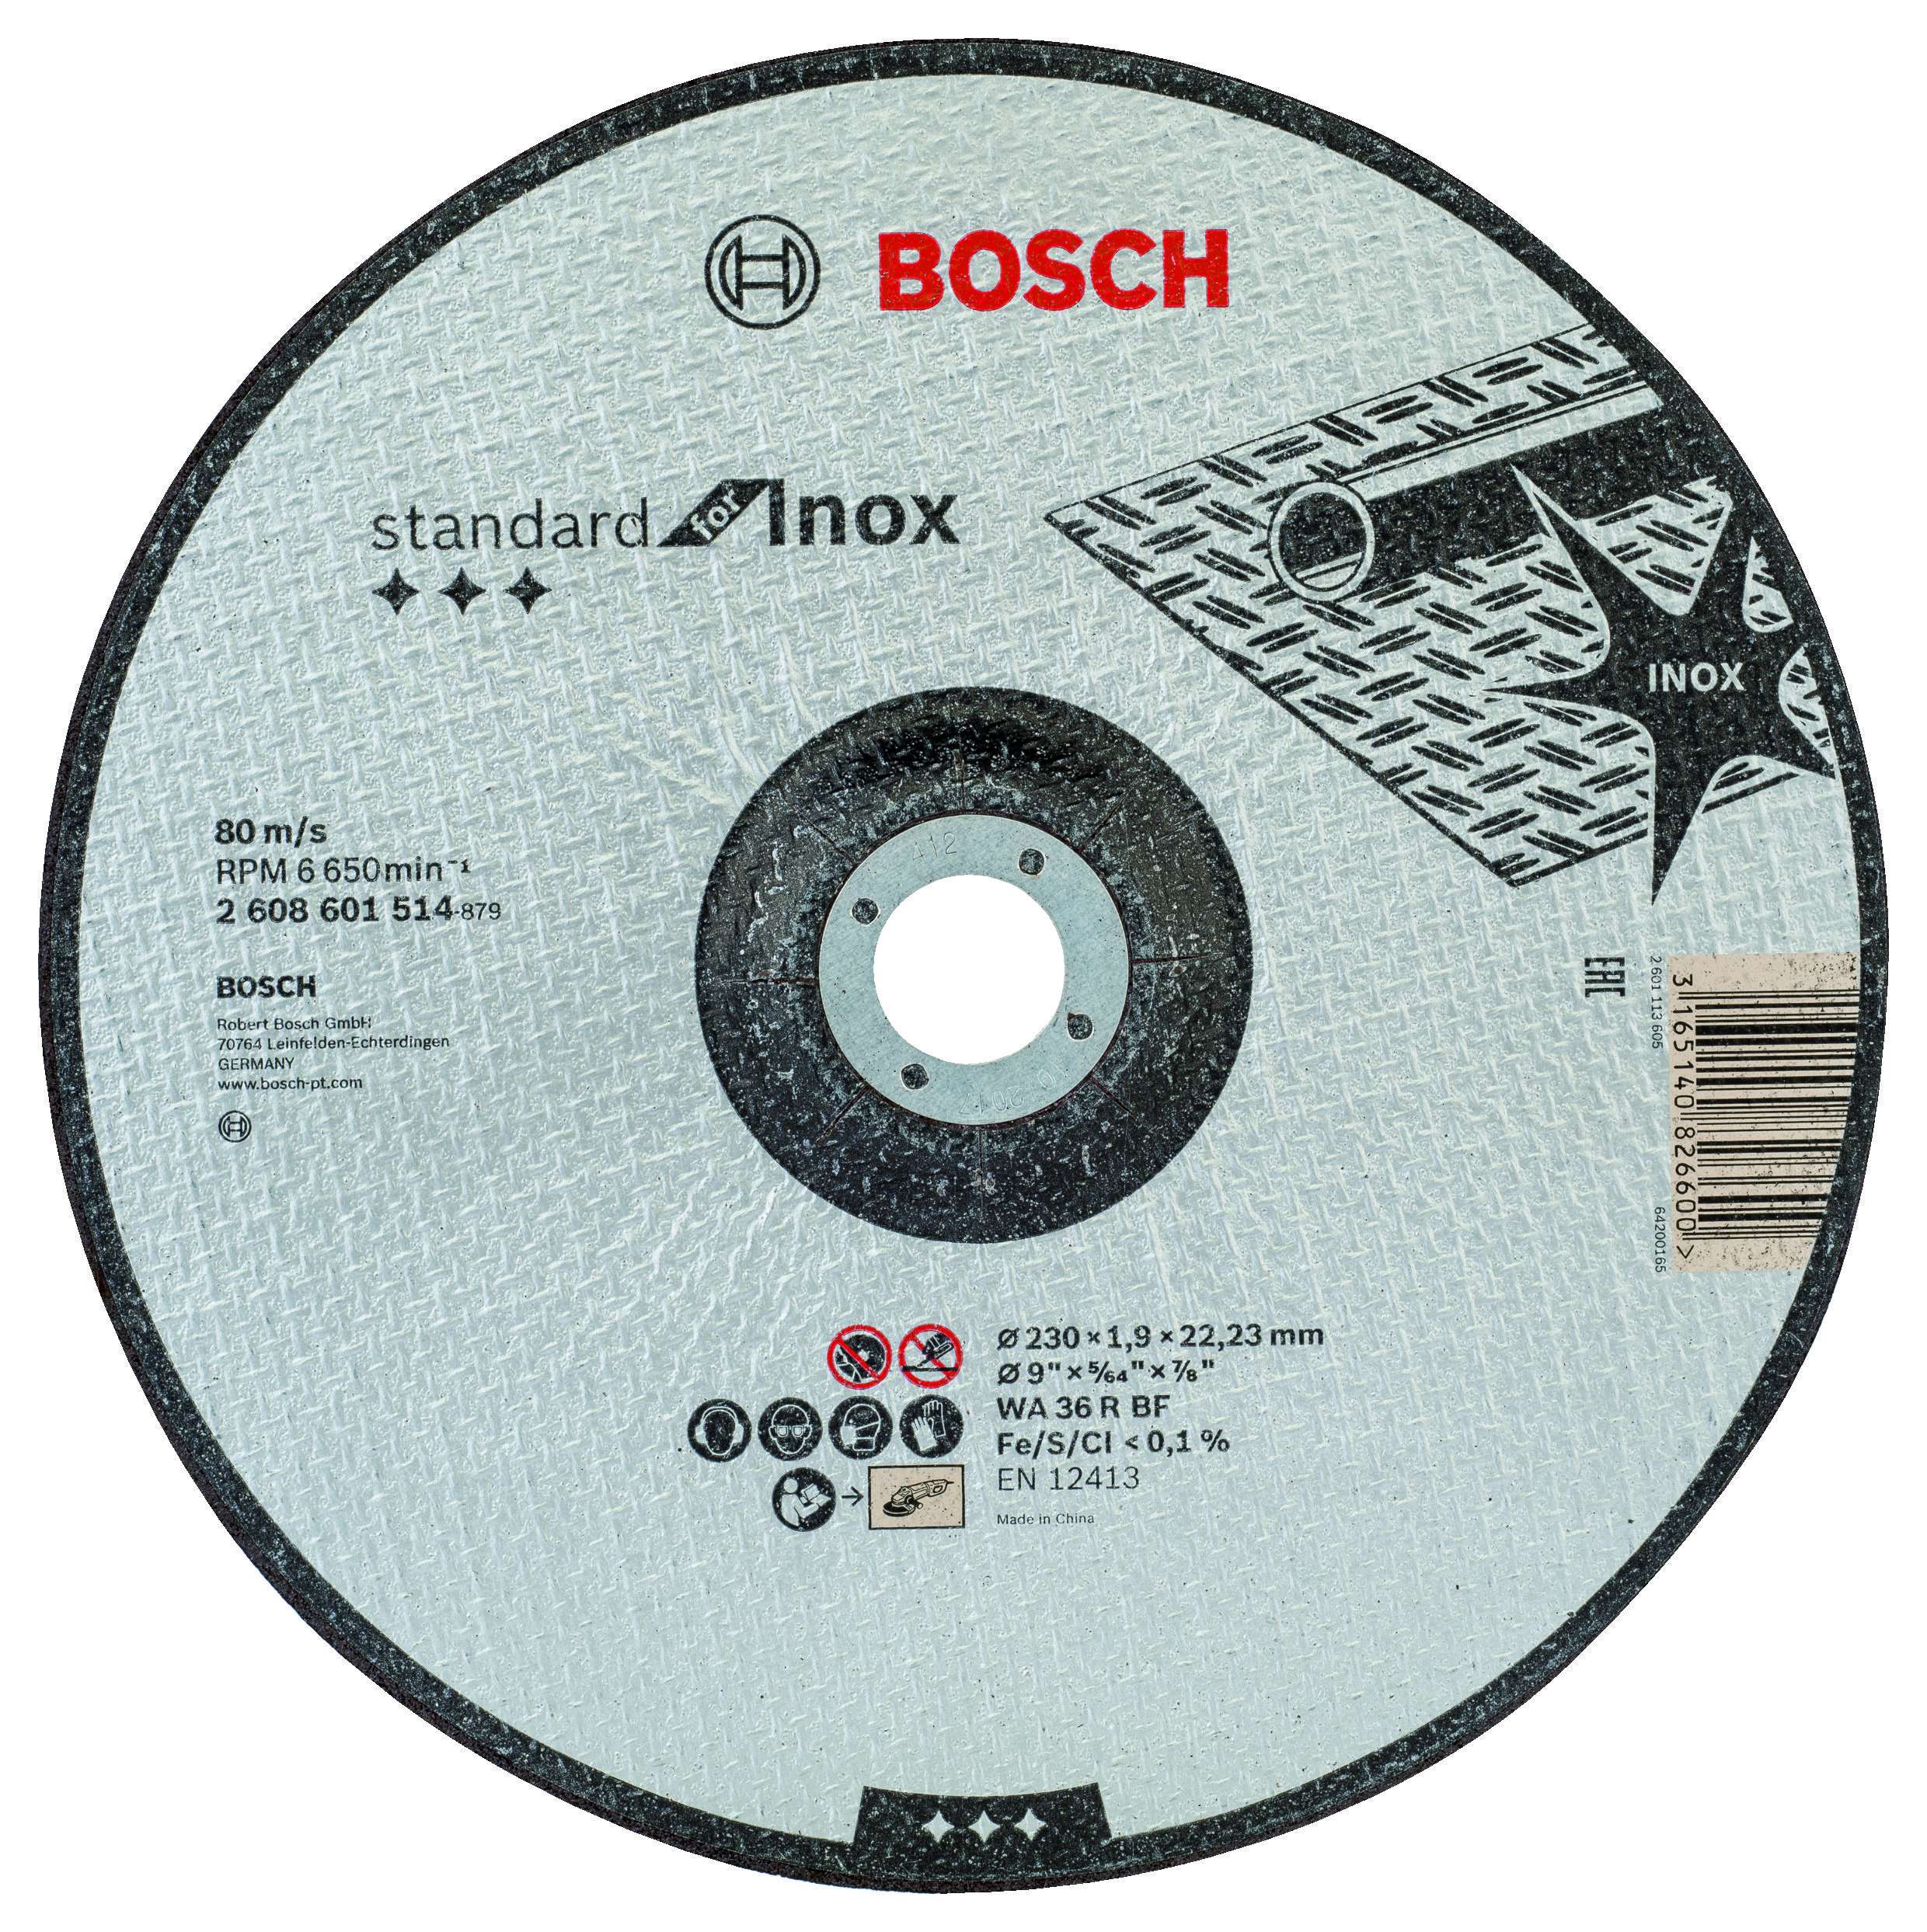 Bosch - 230*1,9 mm Standard Seri Düz Inox (Paslanmaz Çelik) Kesme Diski (Taş)